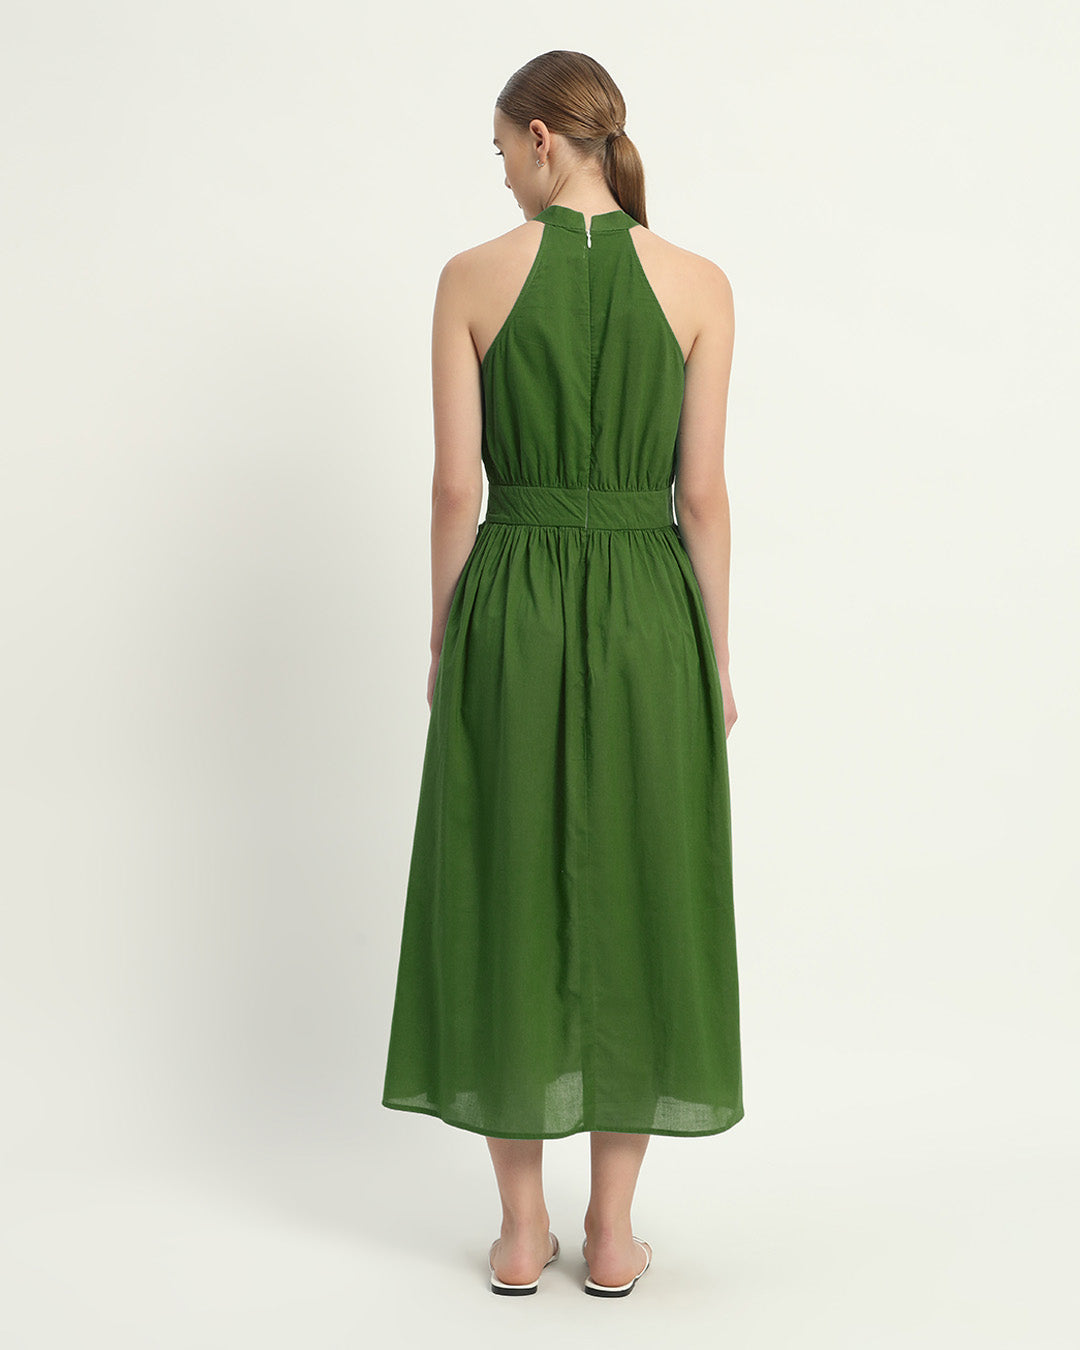 The Emerald Massena Cotton Dress